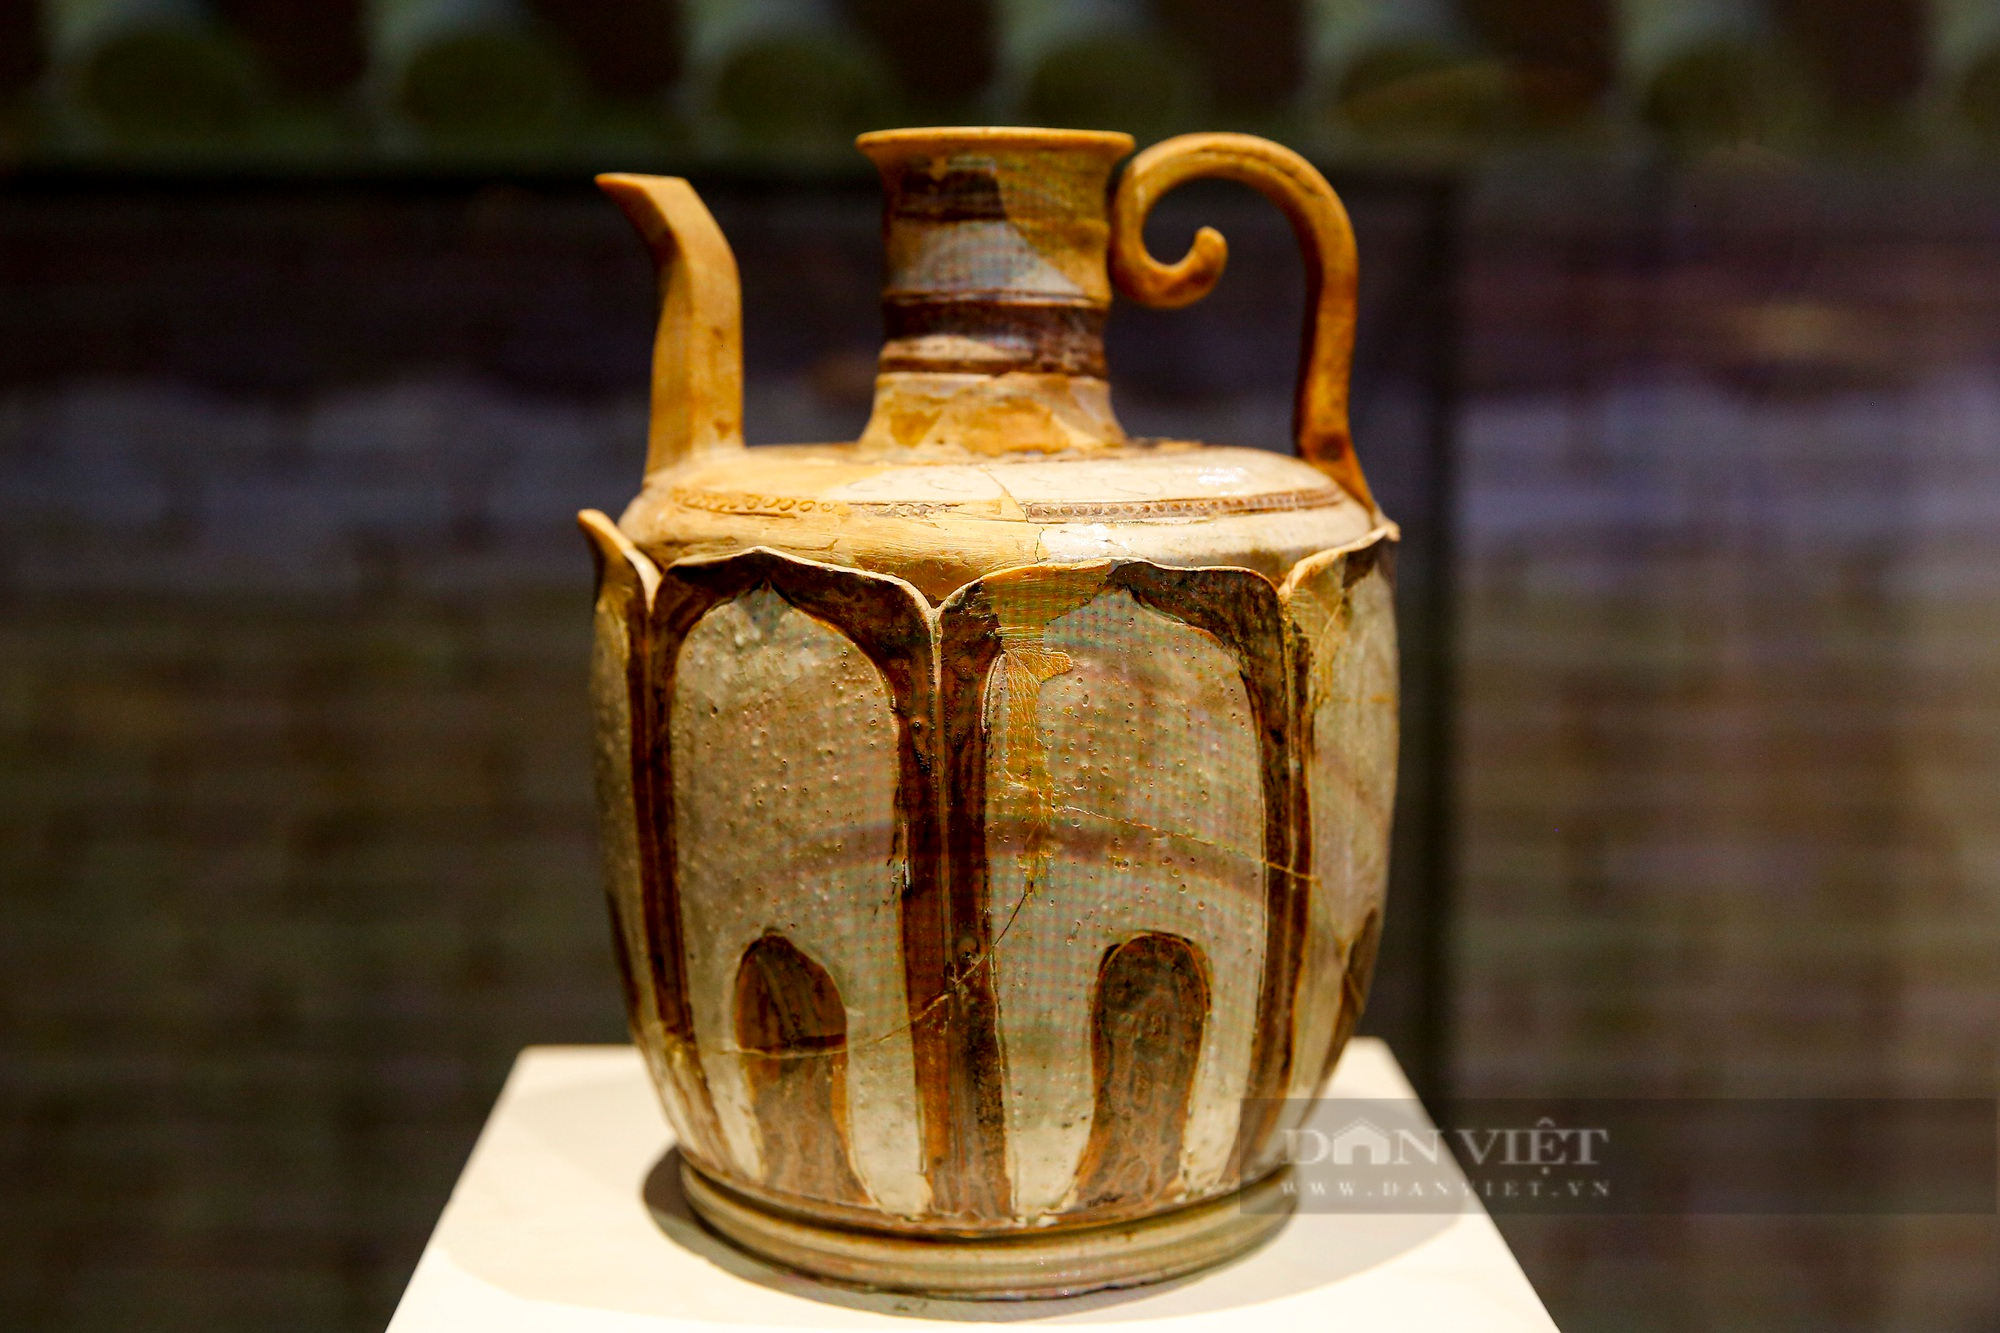 Chiêm ngưỡng những “Báu vật Hoàng cung Thăng Long” vô giá được trưng bày tại Hà Nội - Ảnh 9.